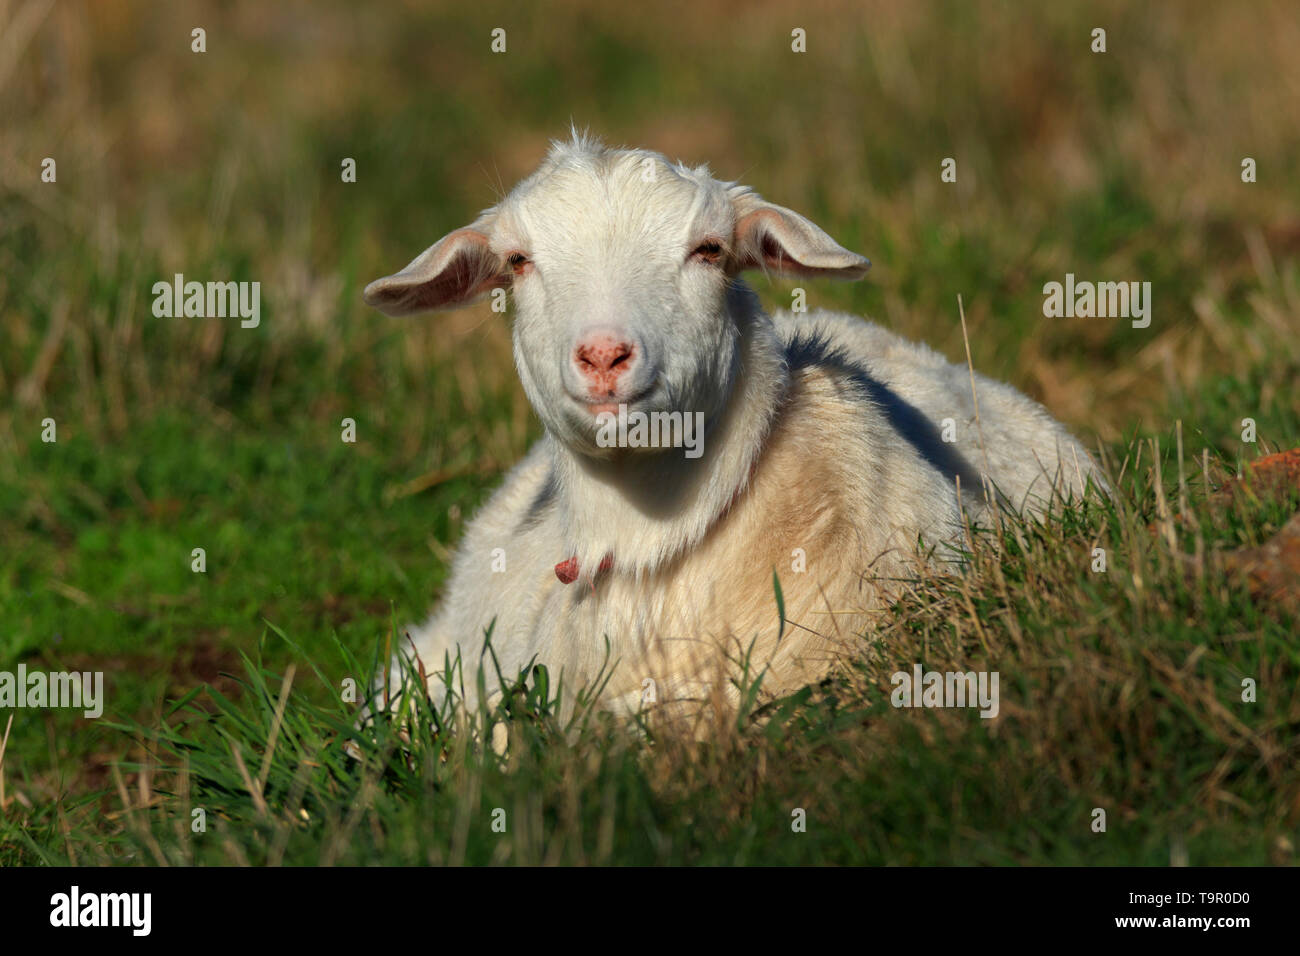 Jolies jeunes chèvre domestique blanc assis dans un enclos de ferme de l'herbe verte. Banque D'Images